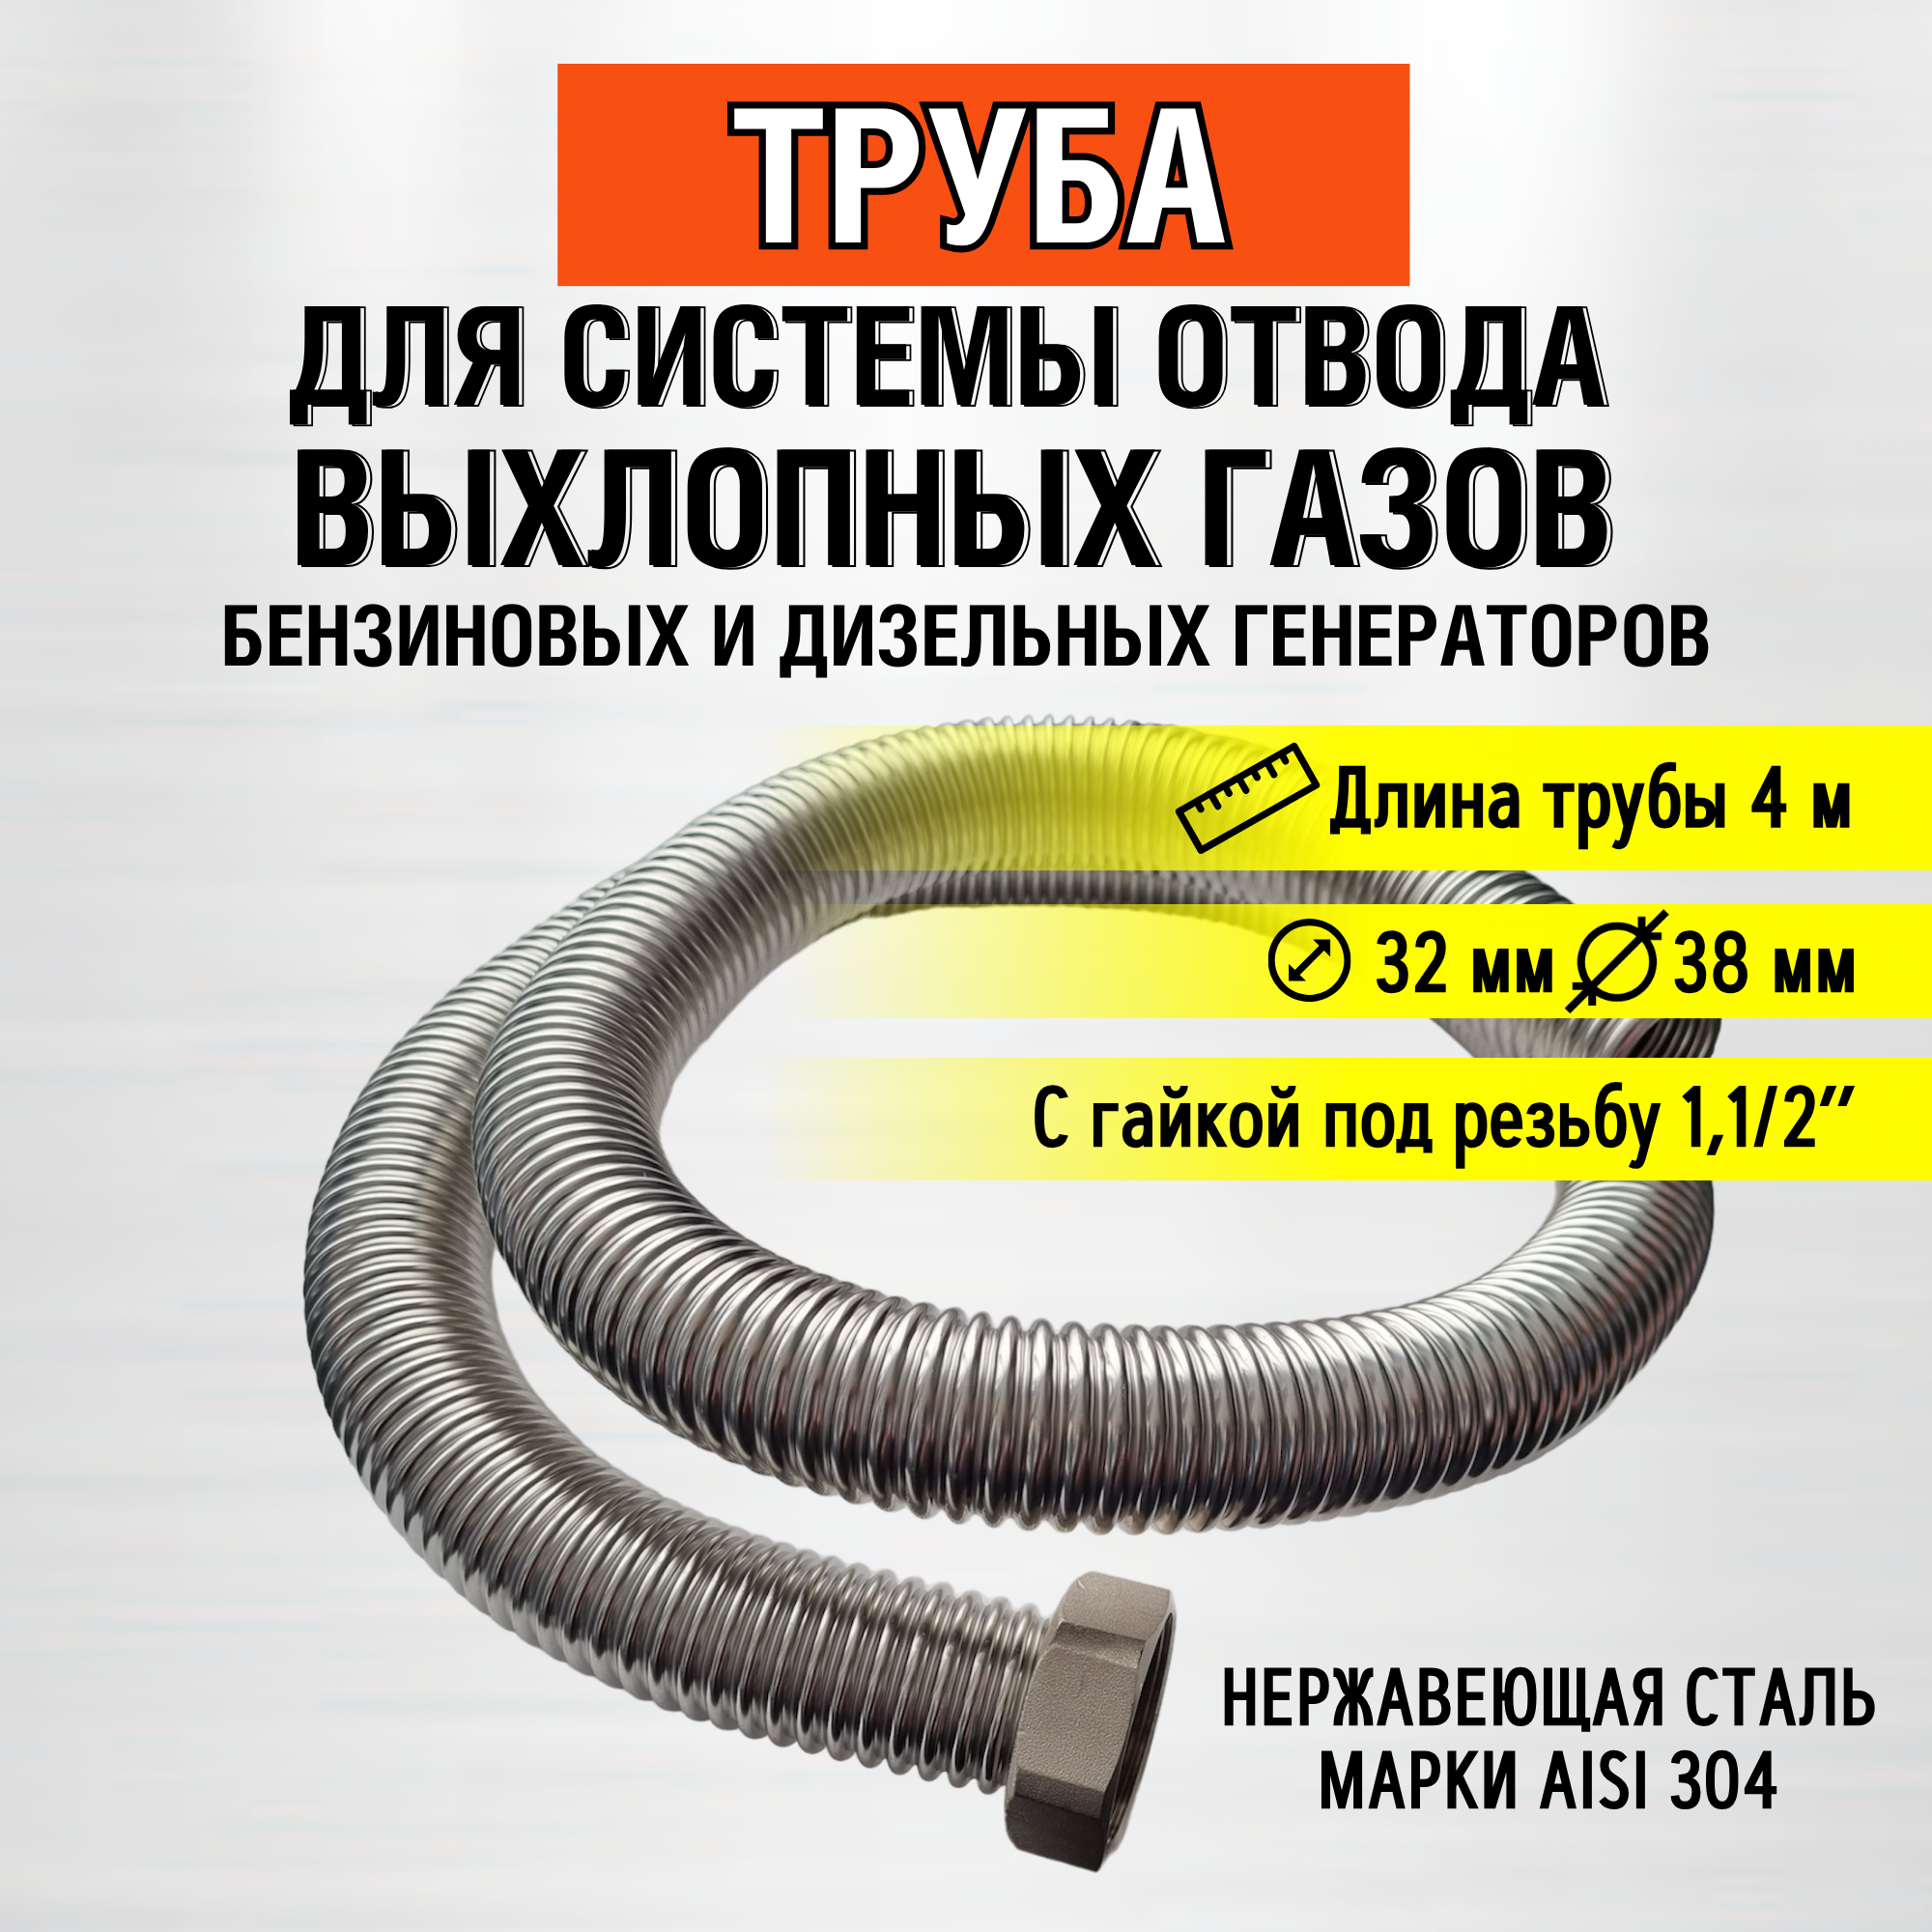 Труба 4м (гайка 1,1/2") труба отвода выхлопных газов